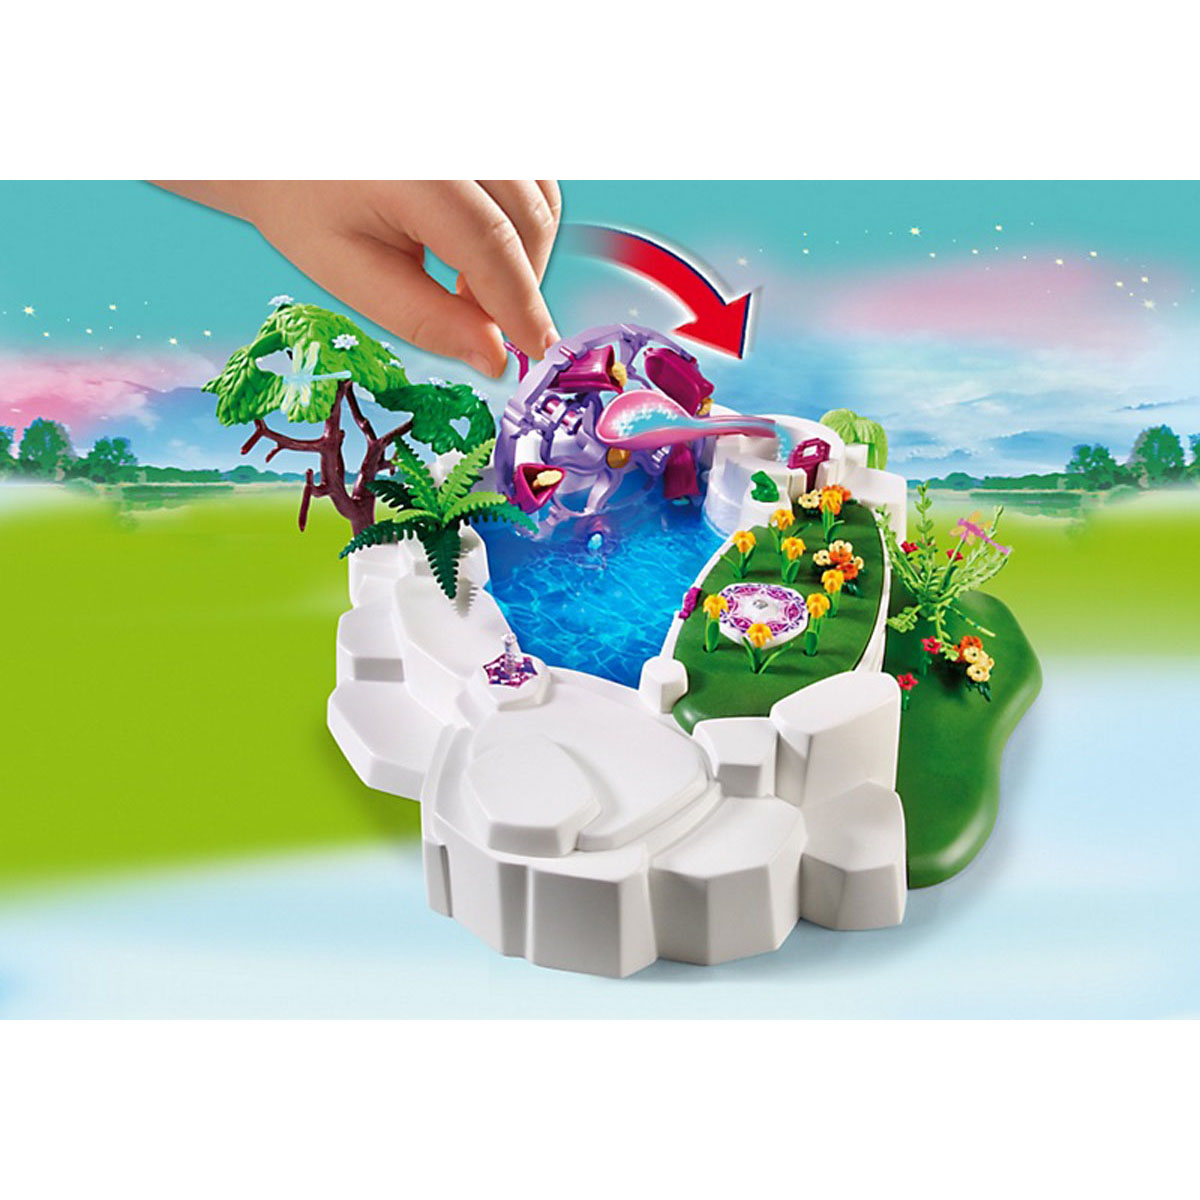 фото Замок кристалла: волшебное озеро playmobil